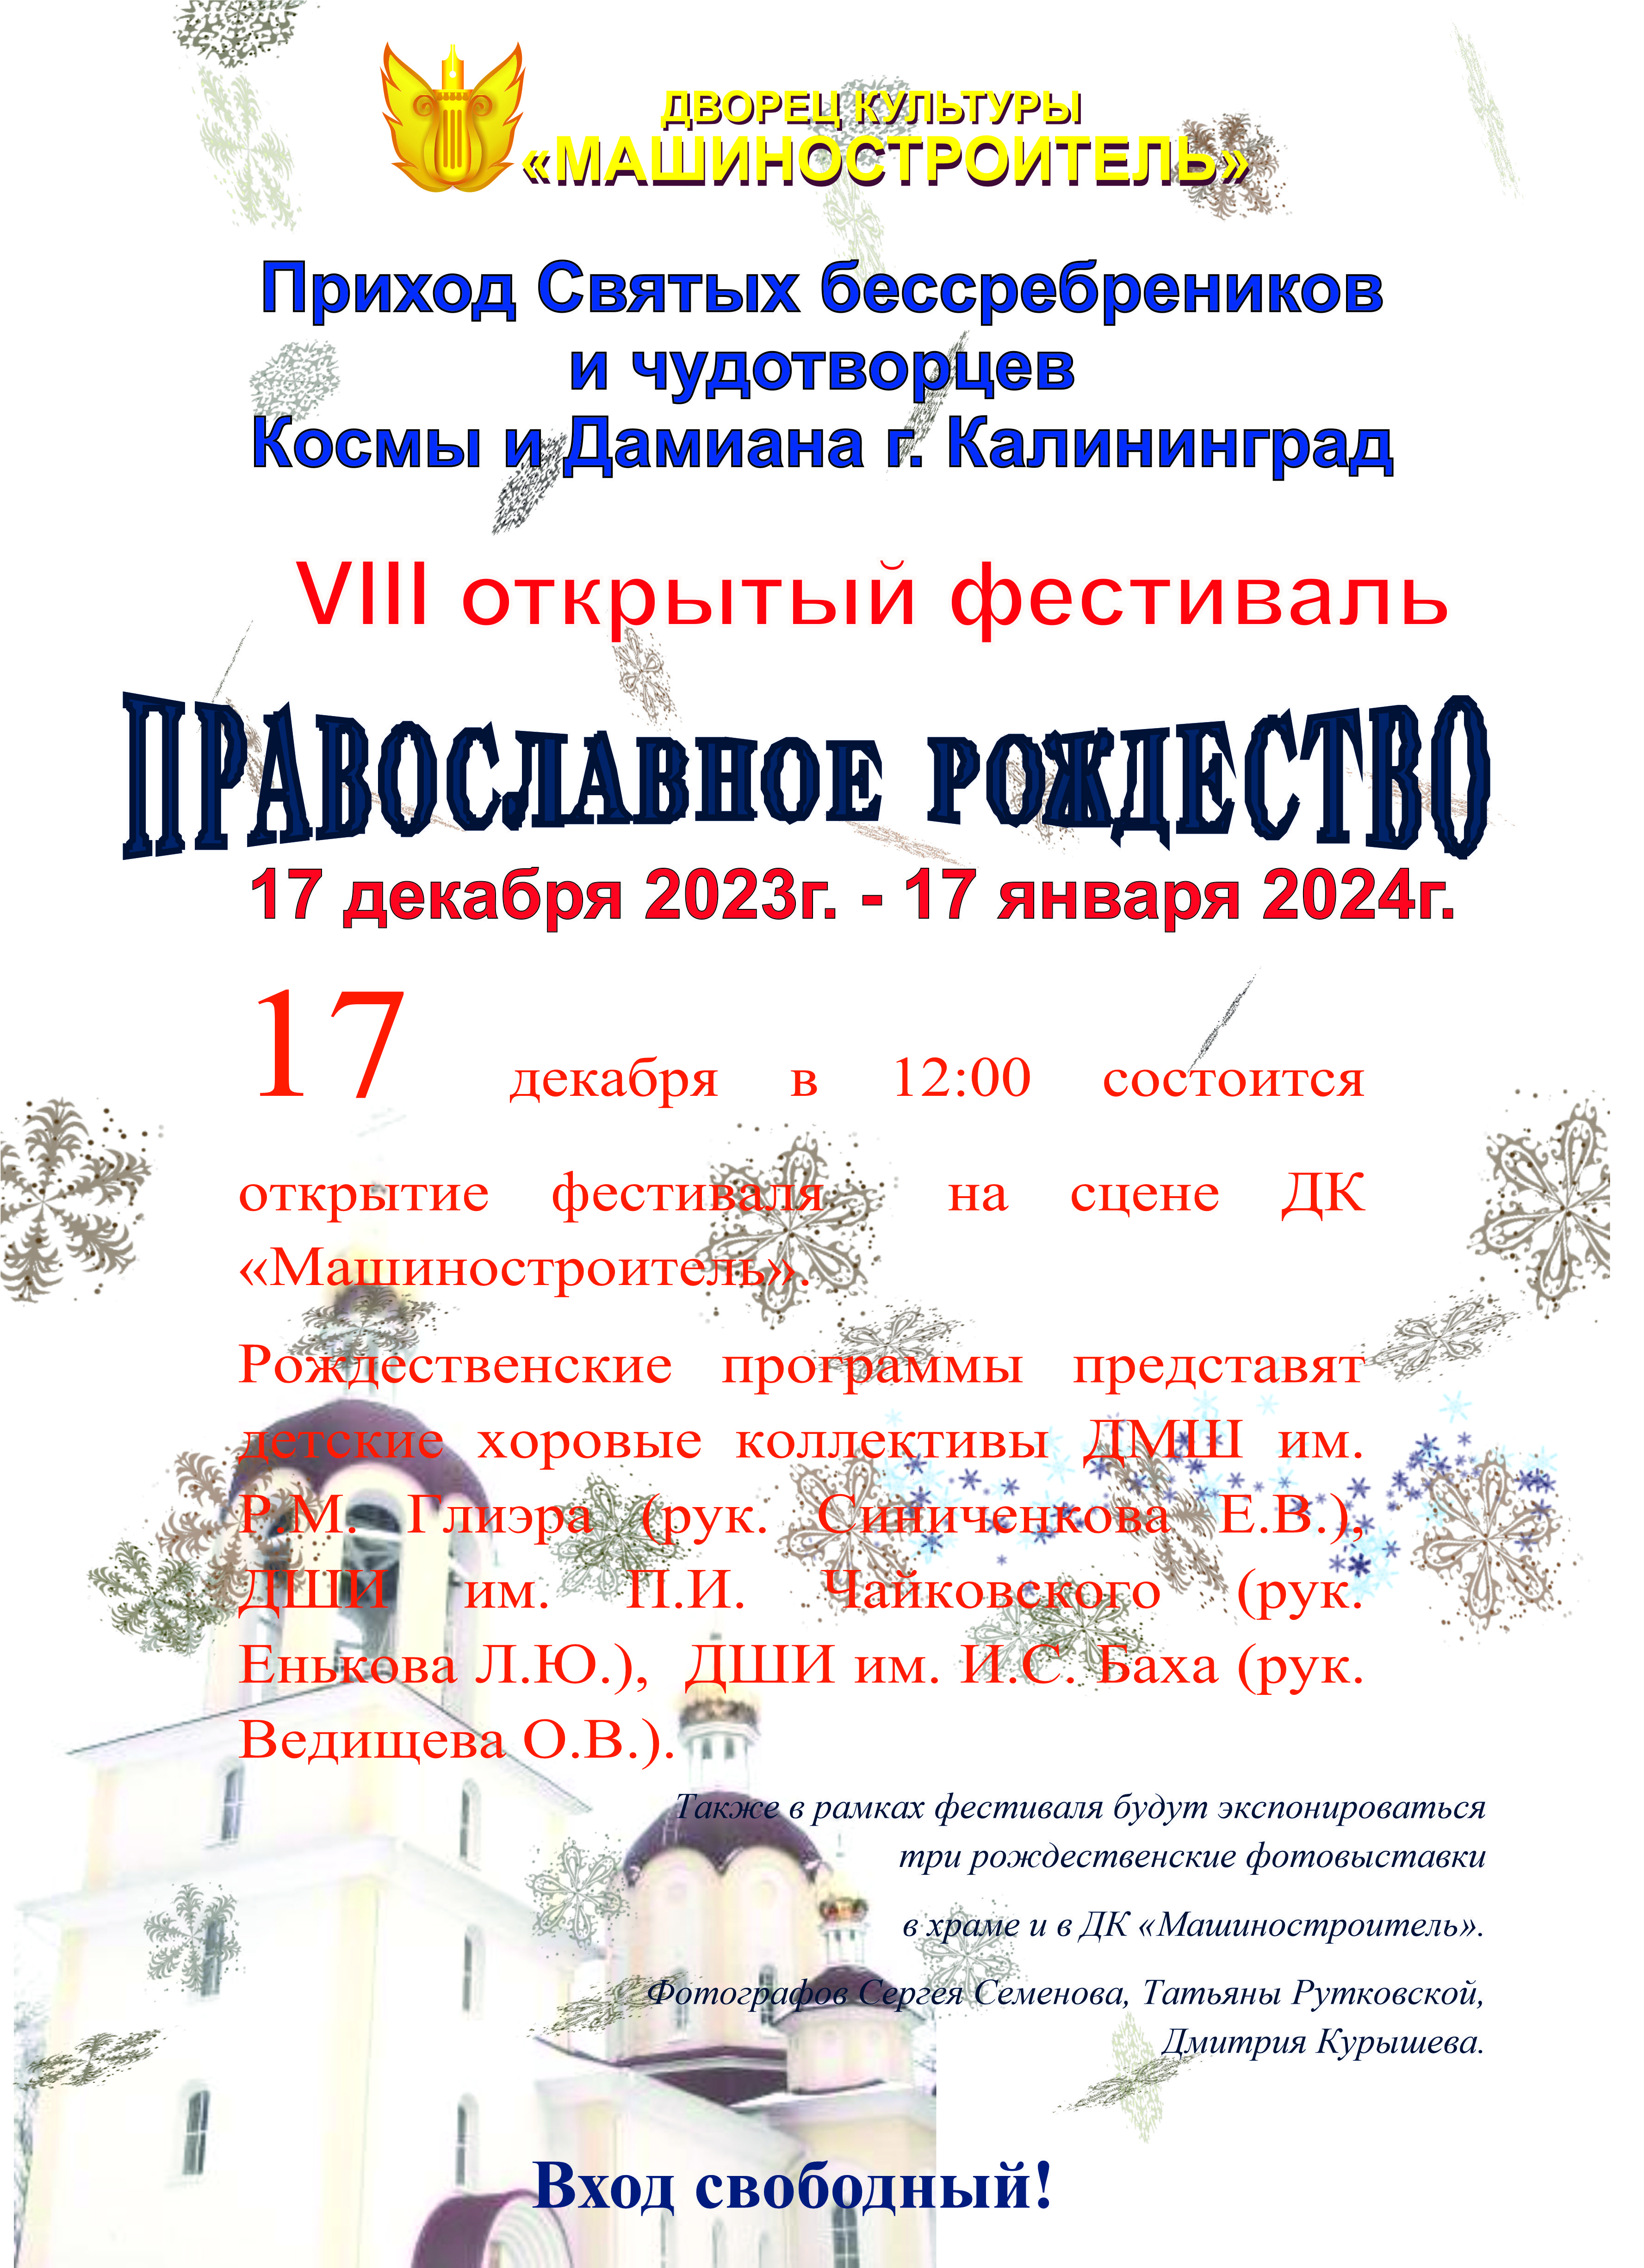 Фестиваль "Православное рождество" - 2023